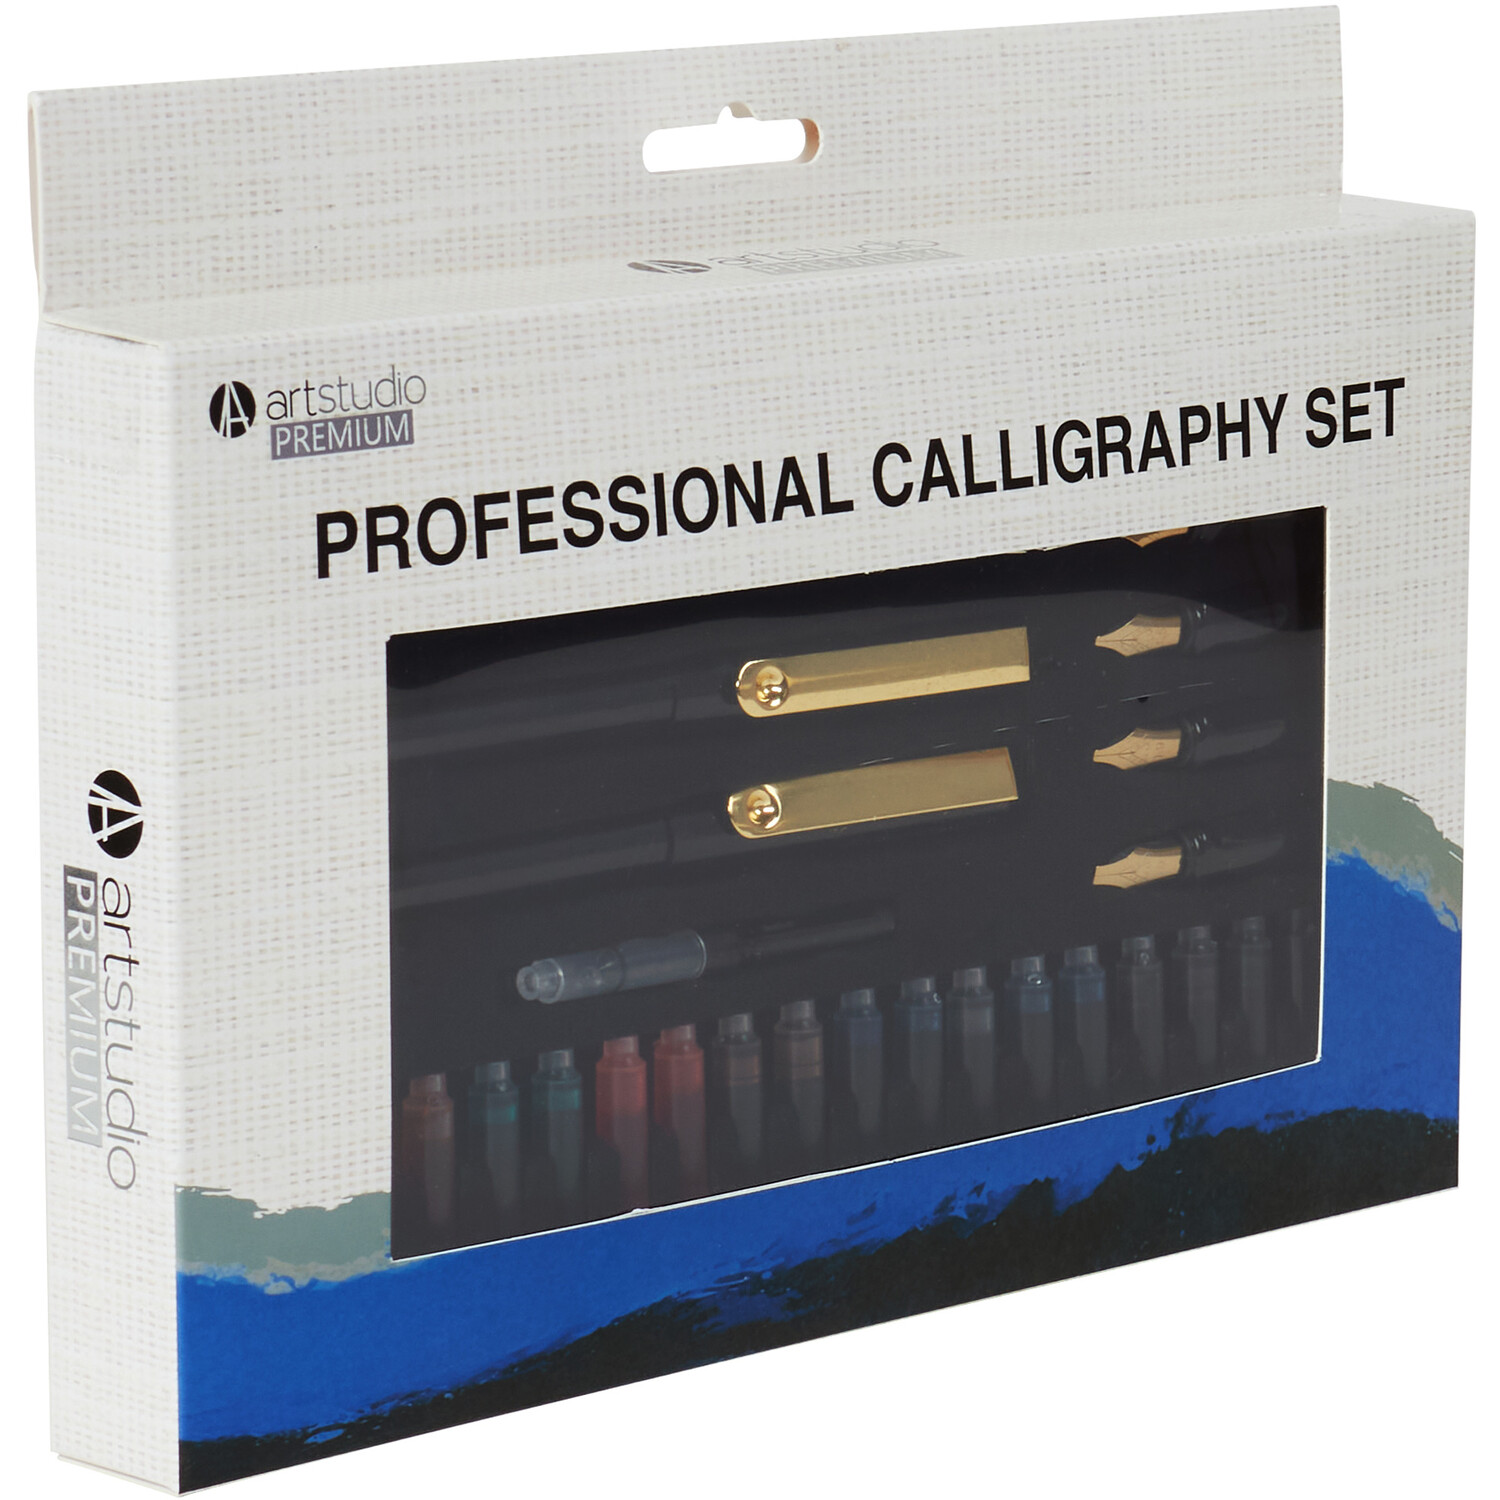 Art Studio Premium Professional Calligraphy Set Image 4